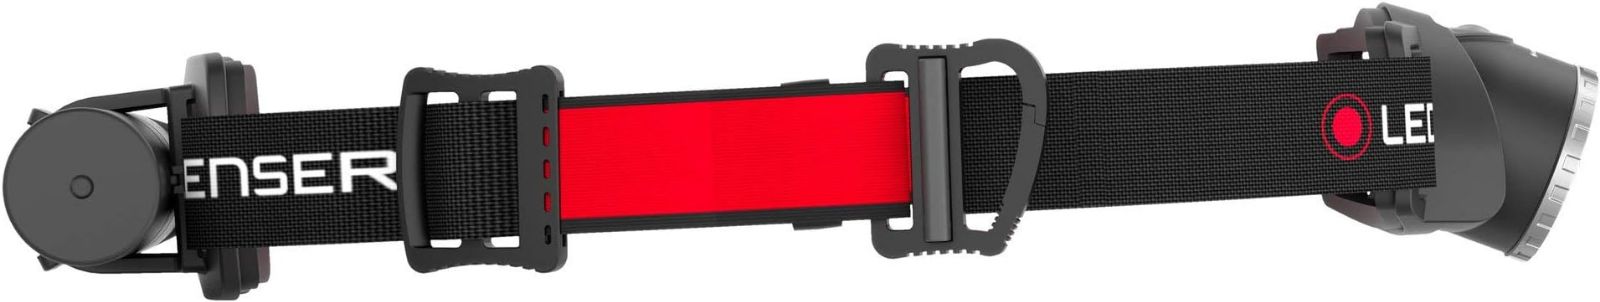 小 ブラック Ledlenser(レッドレンザー) LEDヘッドライト H8R 充電式ヘッドライト フォーカス 簡易包装 500852 [日本正規品]  クルーショップ メルカリ